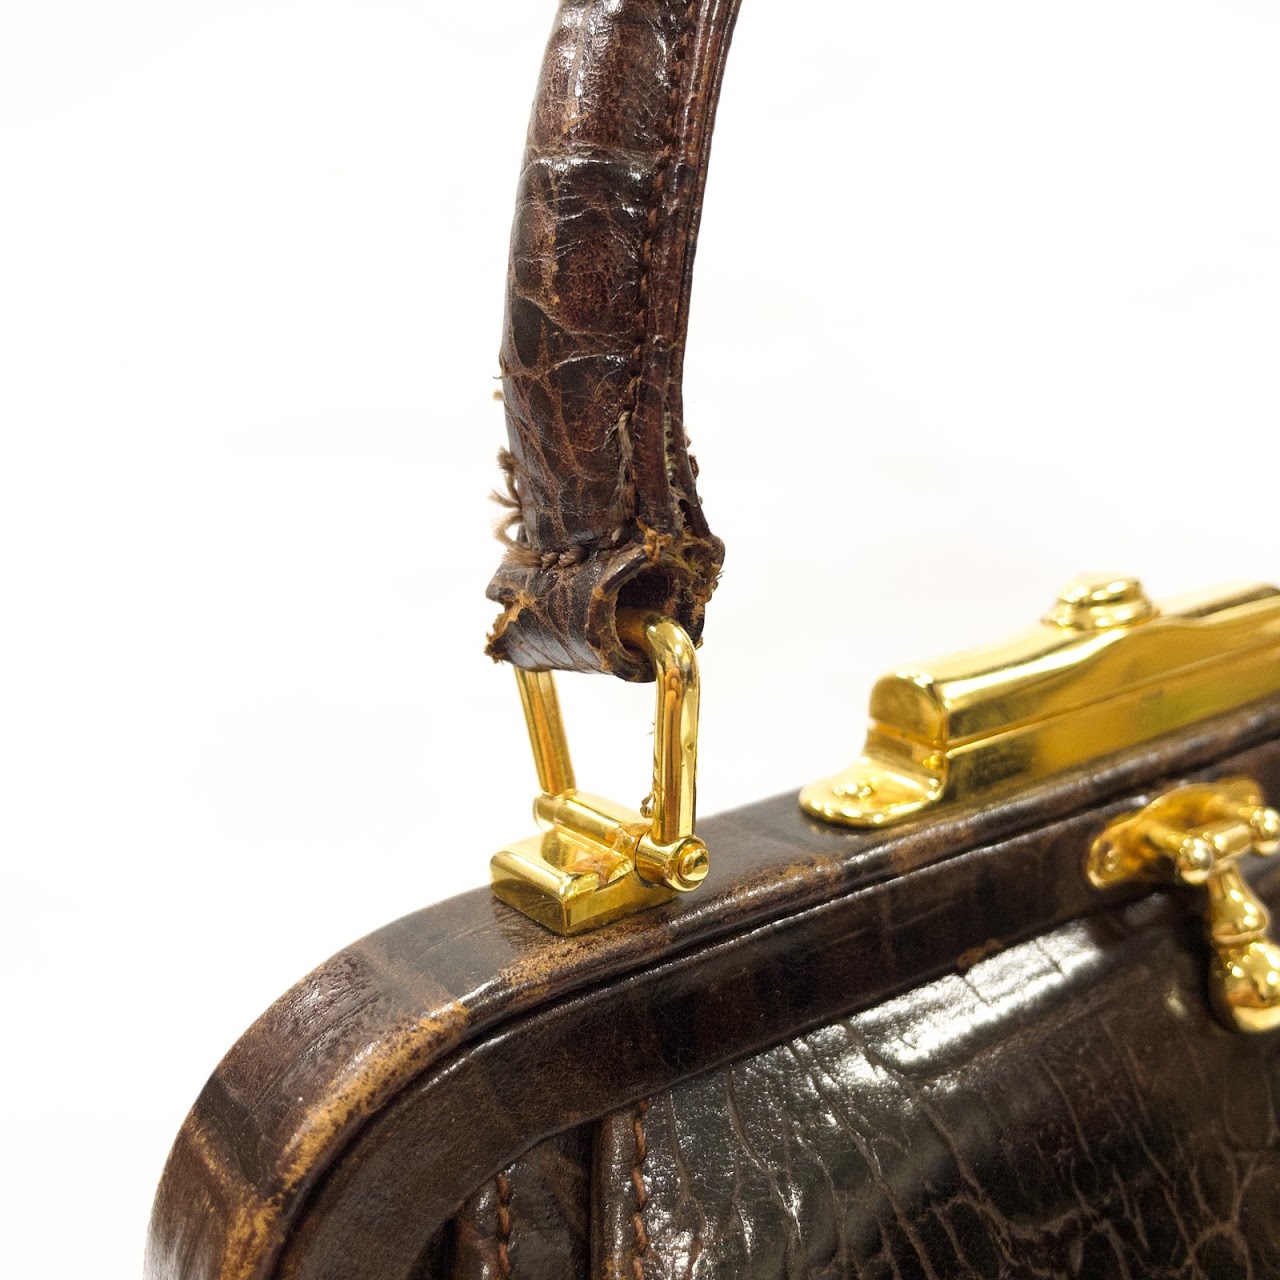 Valentino Garavani Vintage Alligator Handbag